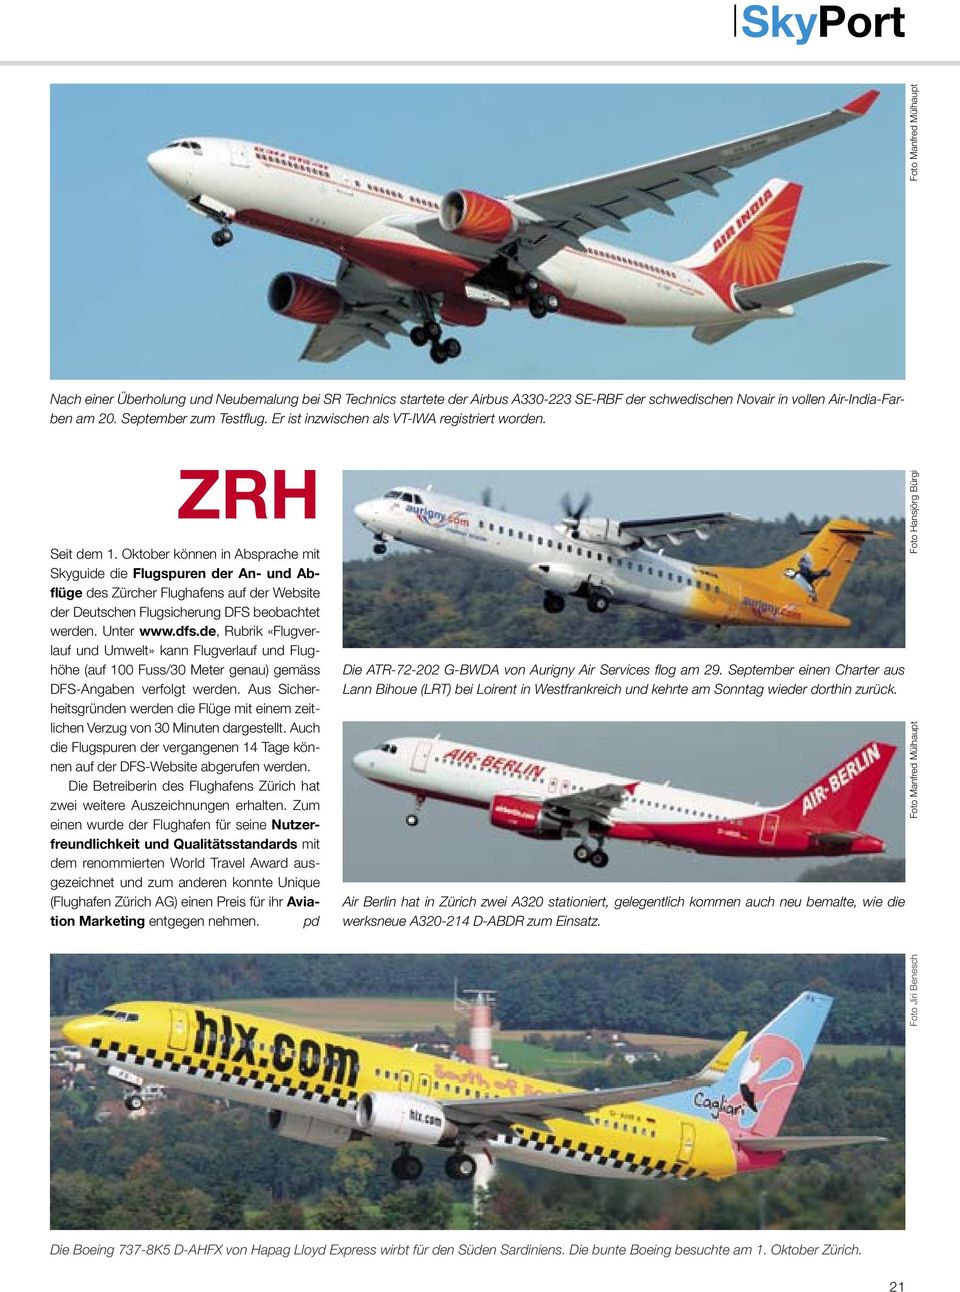 Oktober können in Absprache mit Skyguide die Flugspuren der An- und Abflüge des Zürcher Flughafens auf der Website der Deutschen Flugsicherung DFS beobachtet werden. Unter www.dfs.